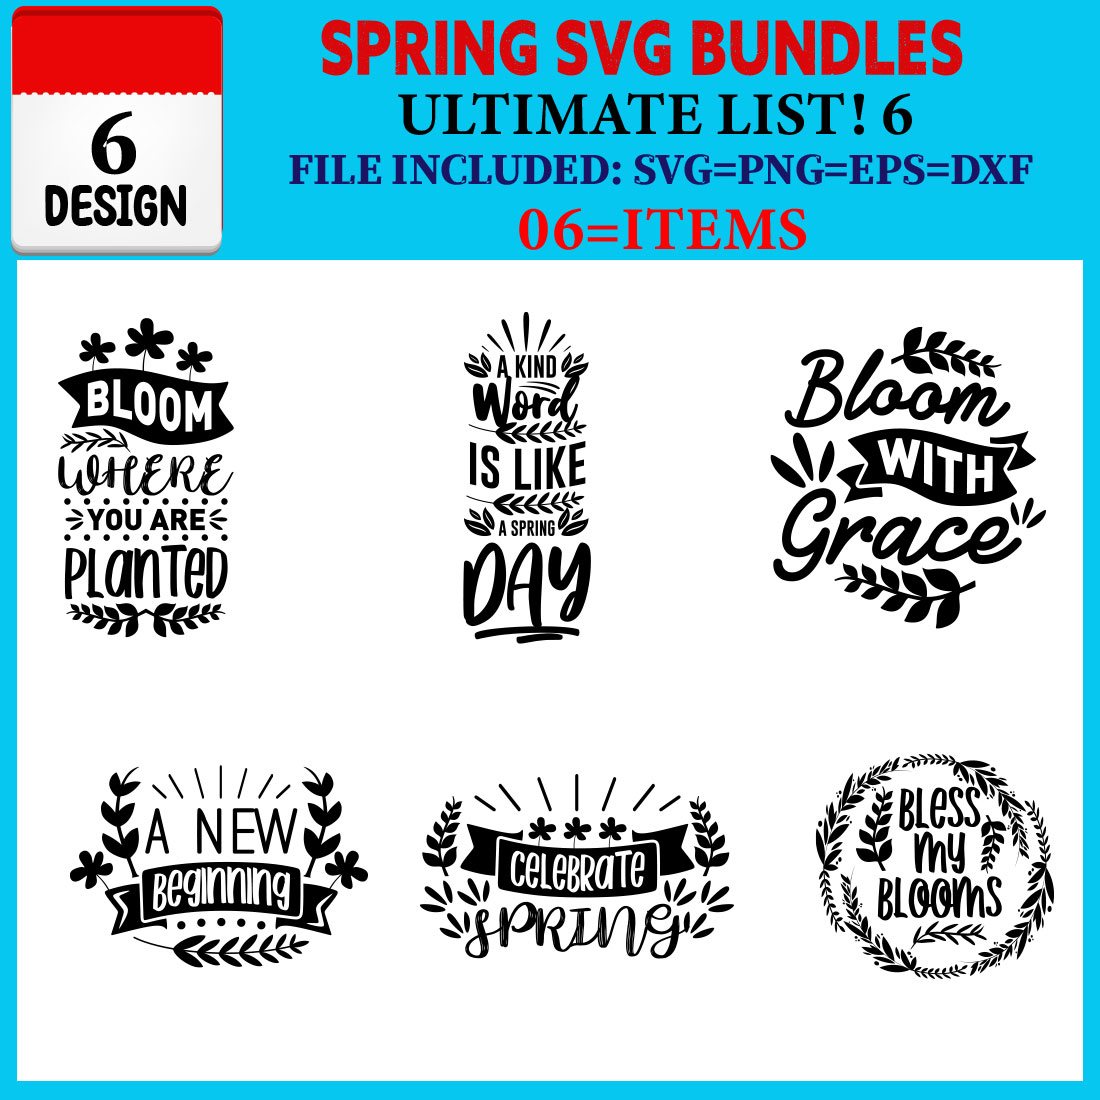 Spring T-shirt Design Bundle Vol-02 cover image.